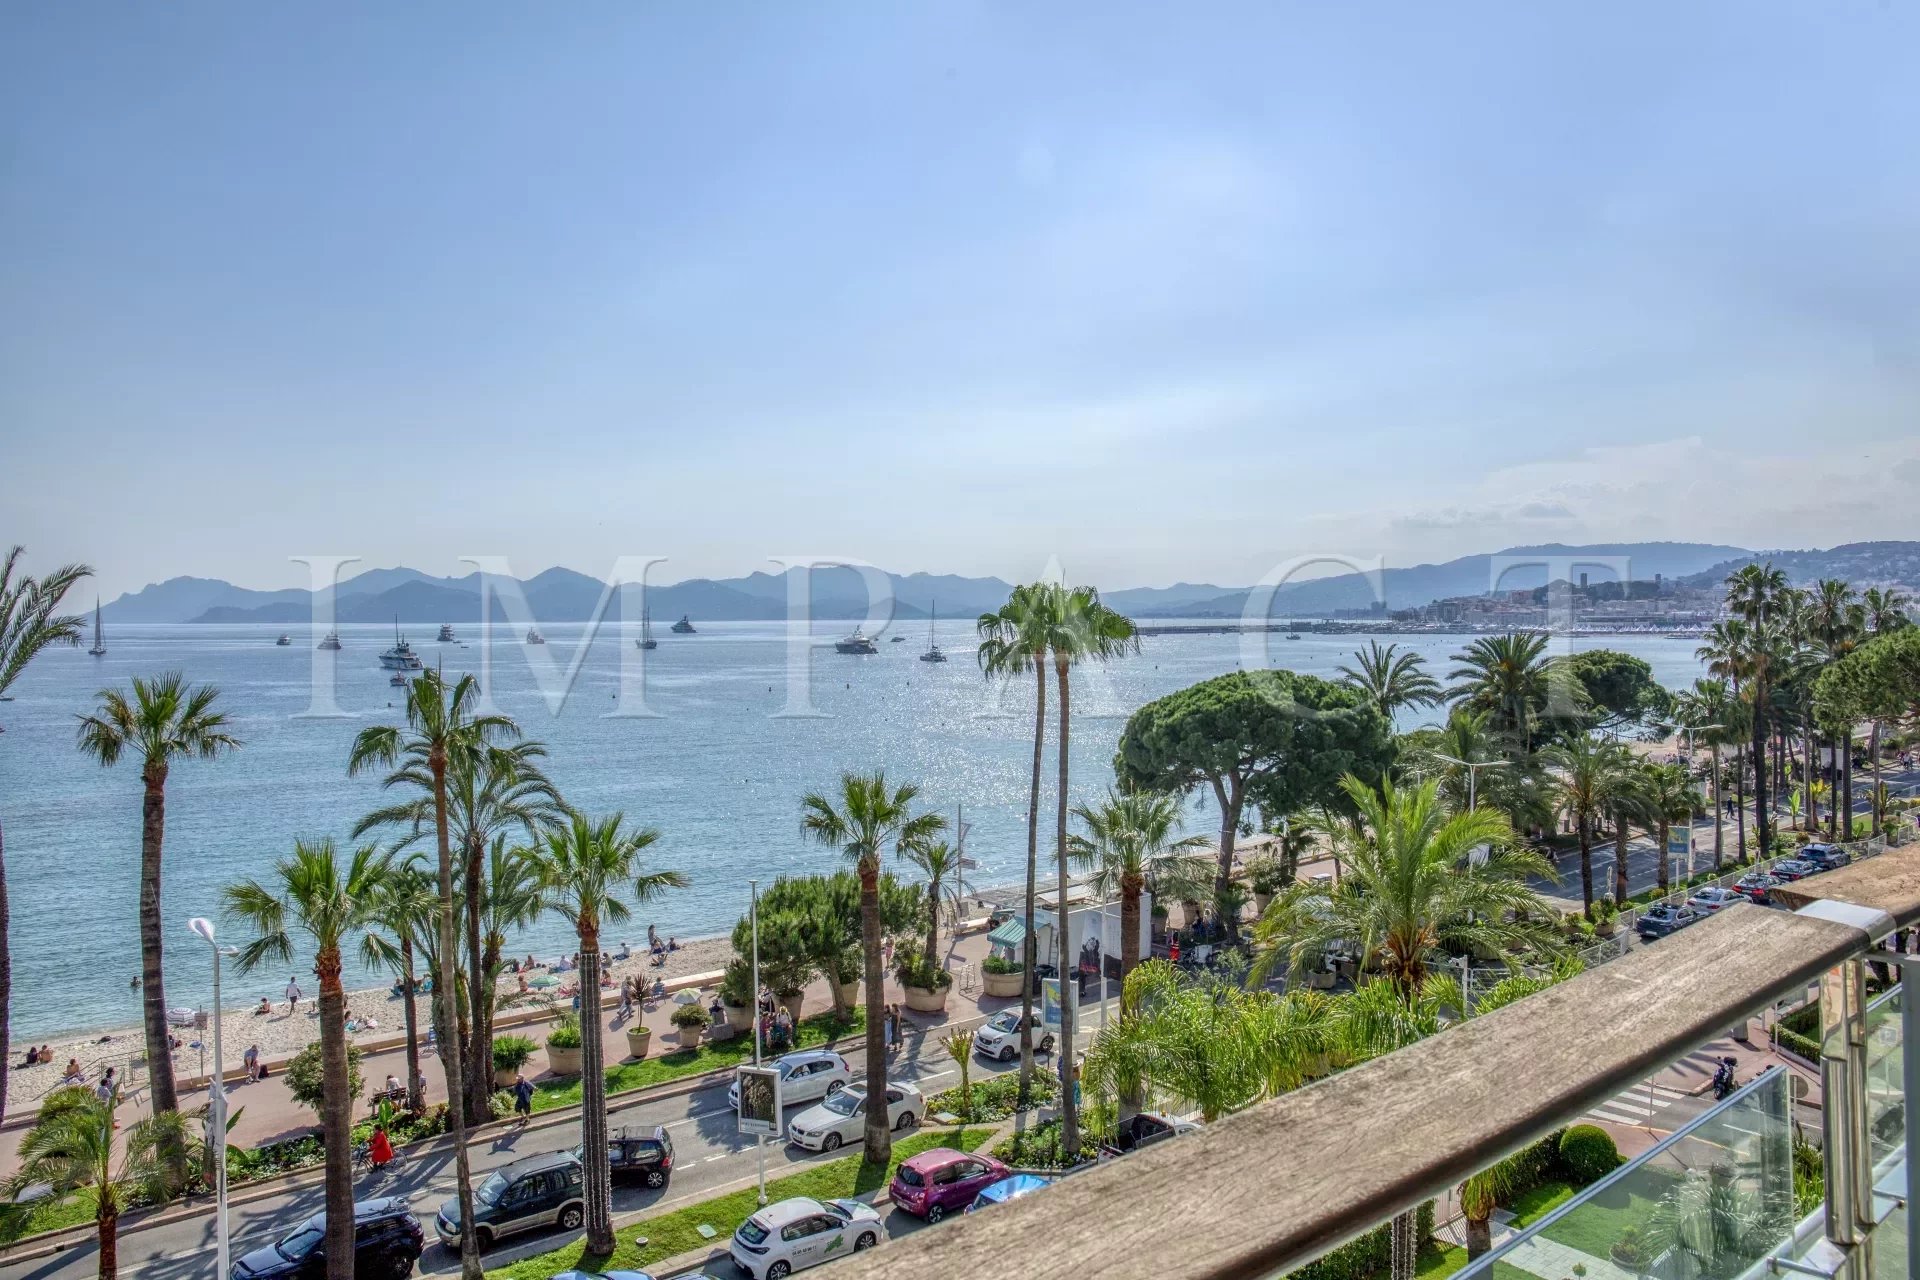 Location saisonnière - Cannes Croisette - Appartement contemporain vue mer